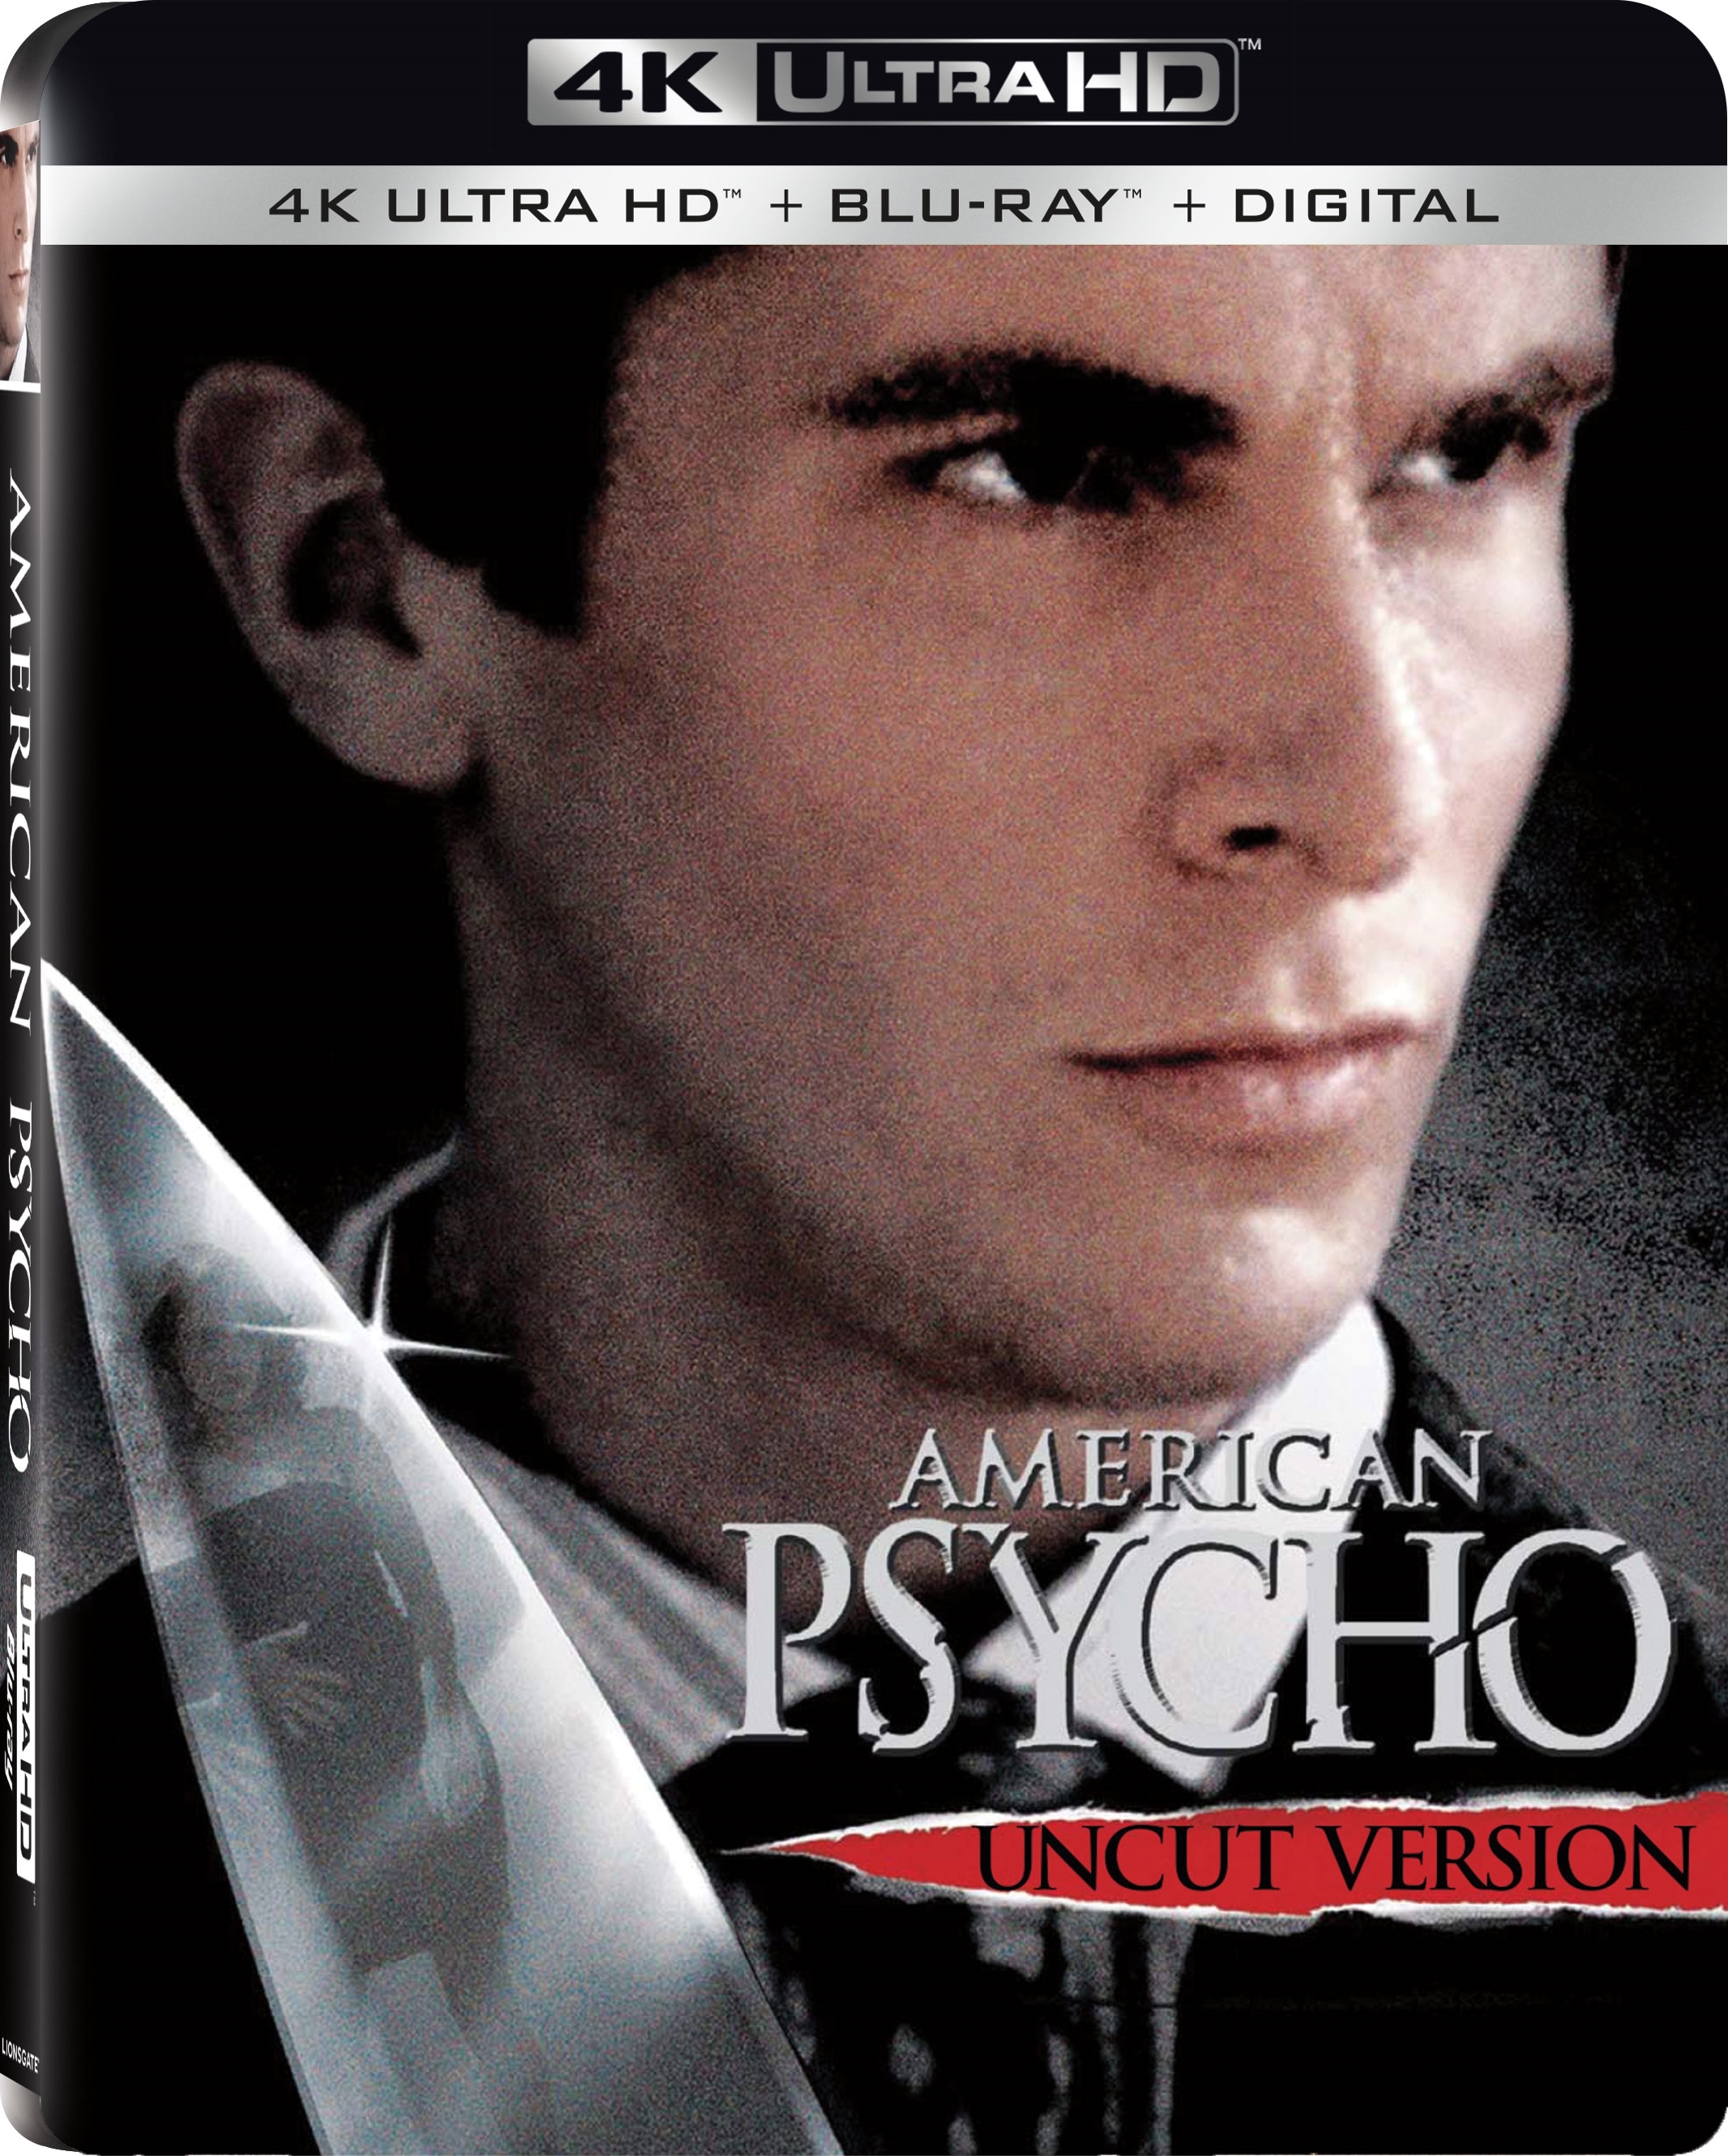 [美国精神病人].American.Psycho.2000.UHD.BluRay.2160p.HEVC.TrueHD.7.1-A236P5@OurBits      75.66G-1.jpg